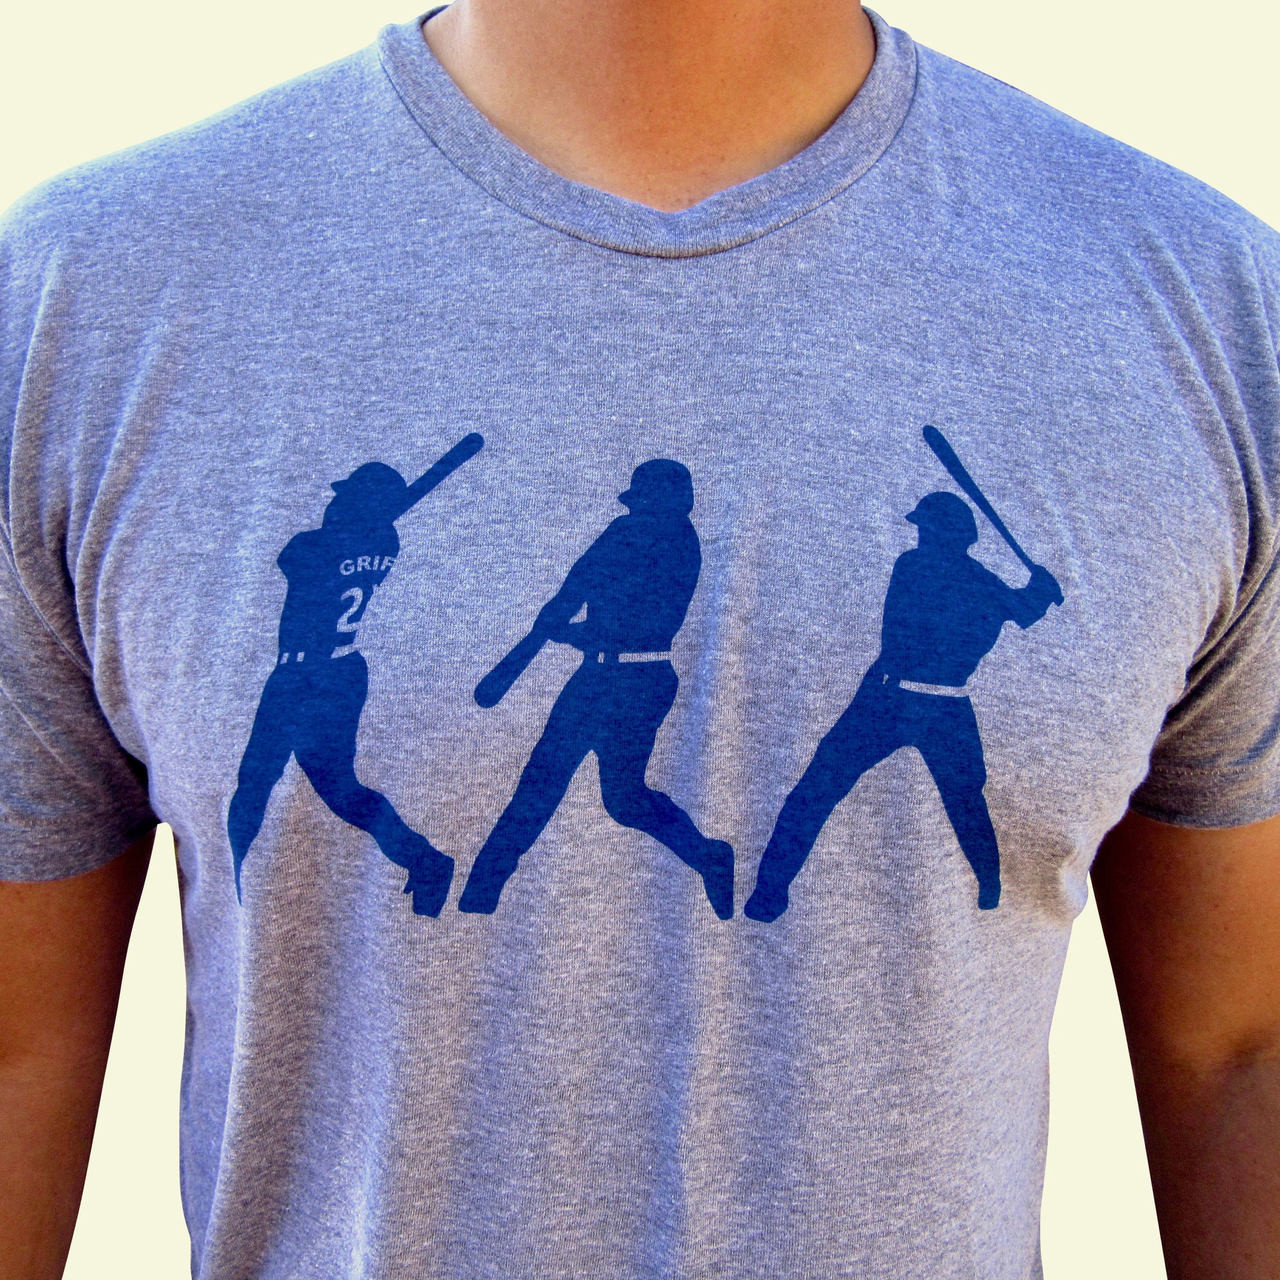 Ken Griffey Jr. Baseball Tee Shirt